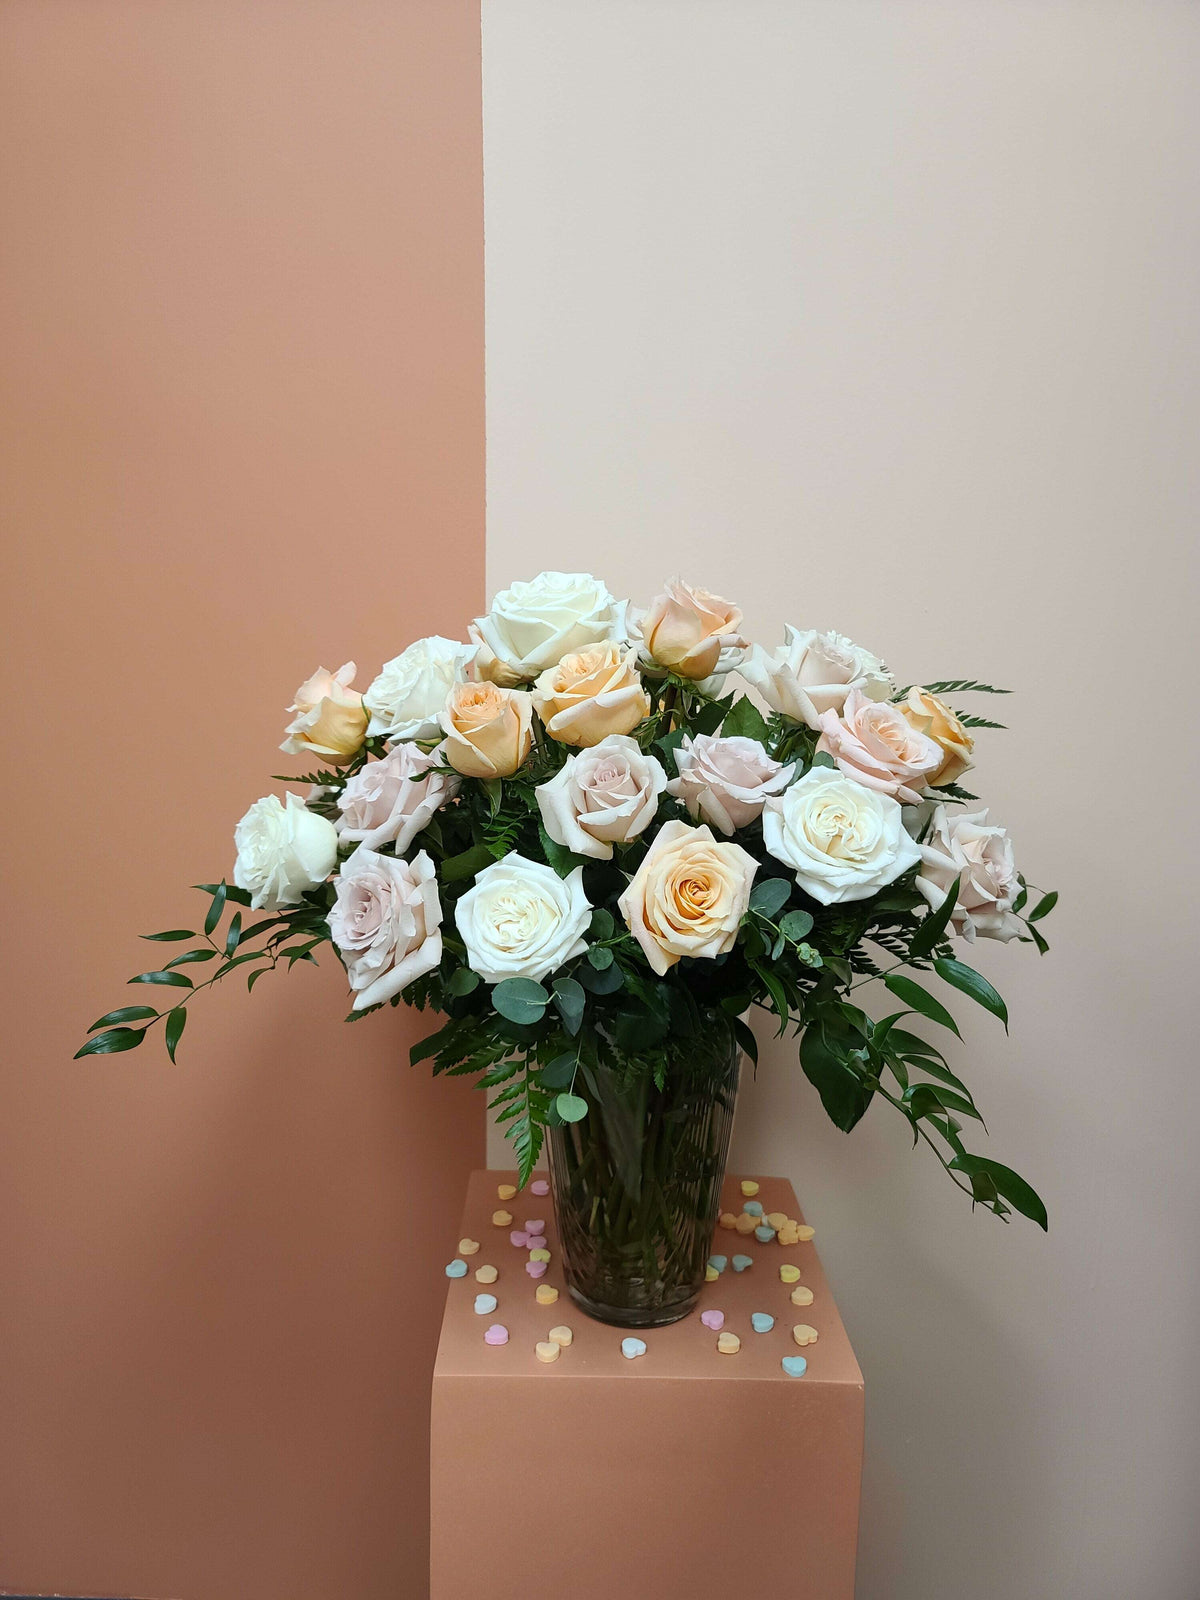 3 Dozen Roses in a vase_Flower Arrangement_Floral Fixx Design Studio_The Floral Fixx